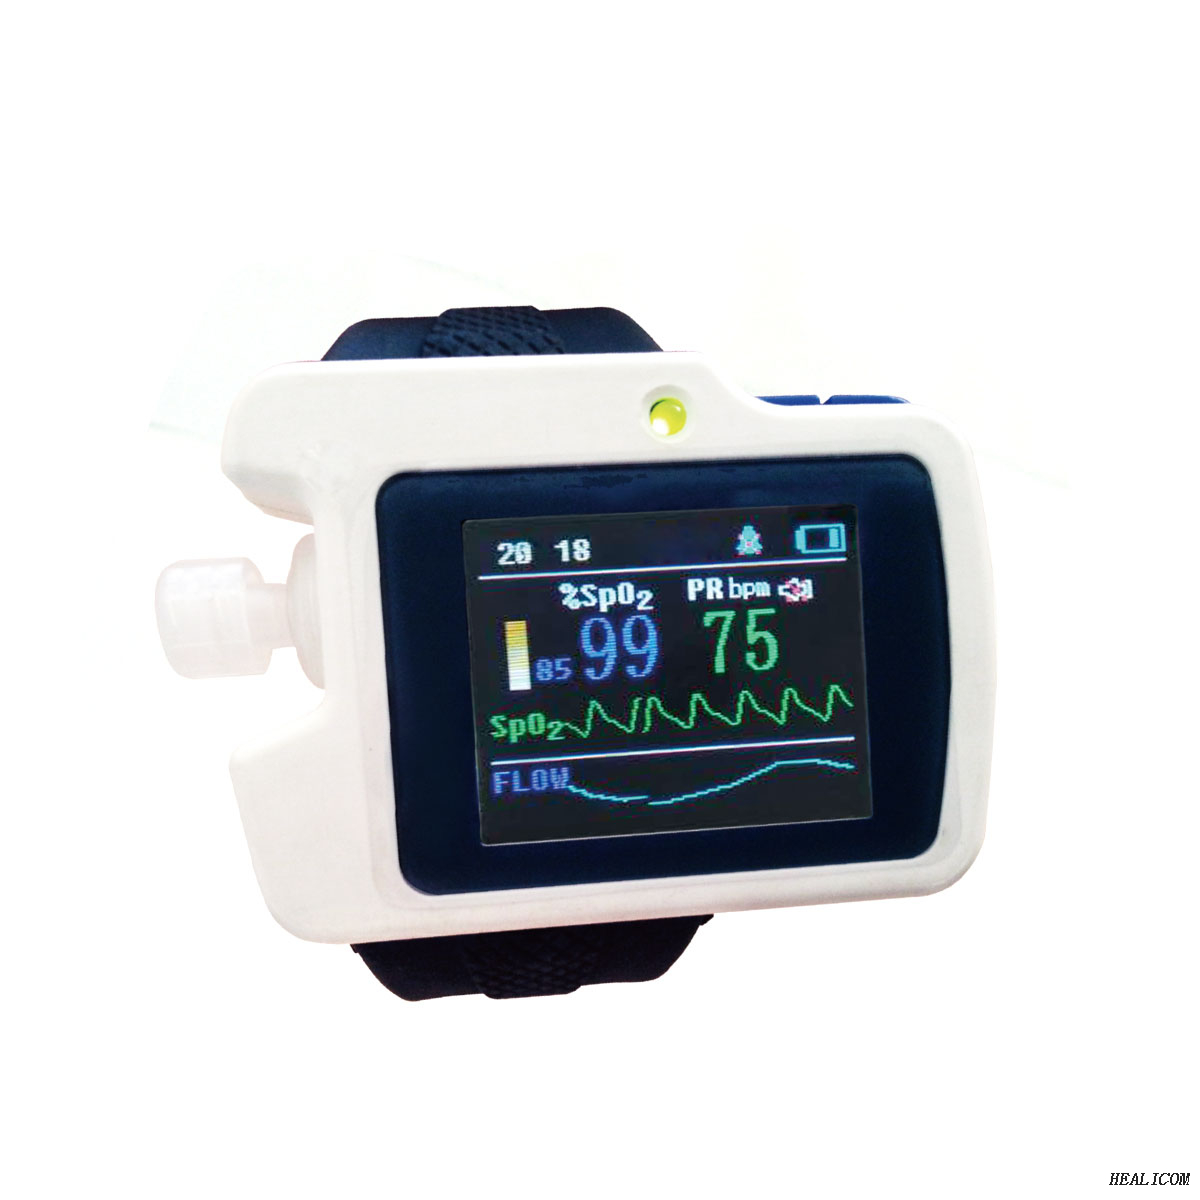 Moniteur patient RS01 MPOC, compteur d'écran d'apnée du sommeil, détecteur de sommeil respiratoire avec logiciel PC